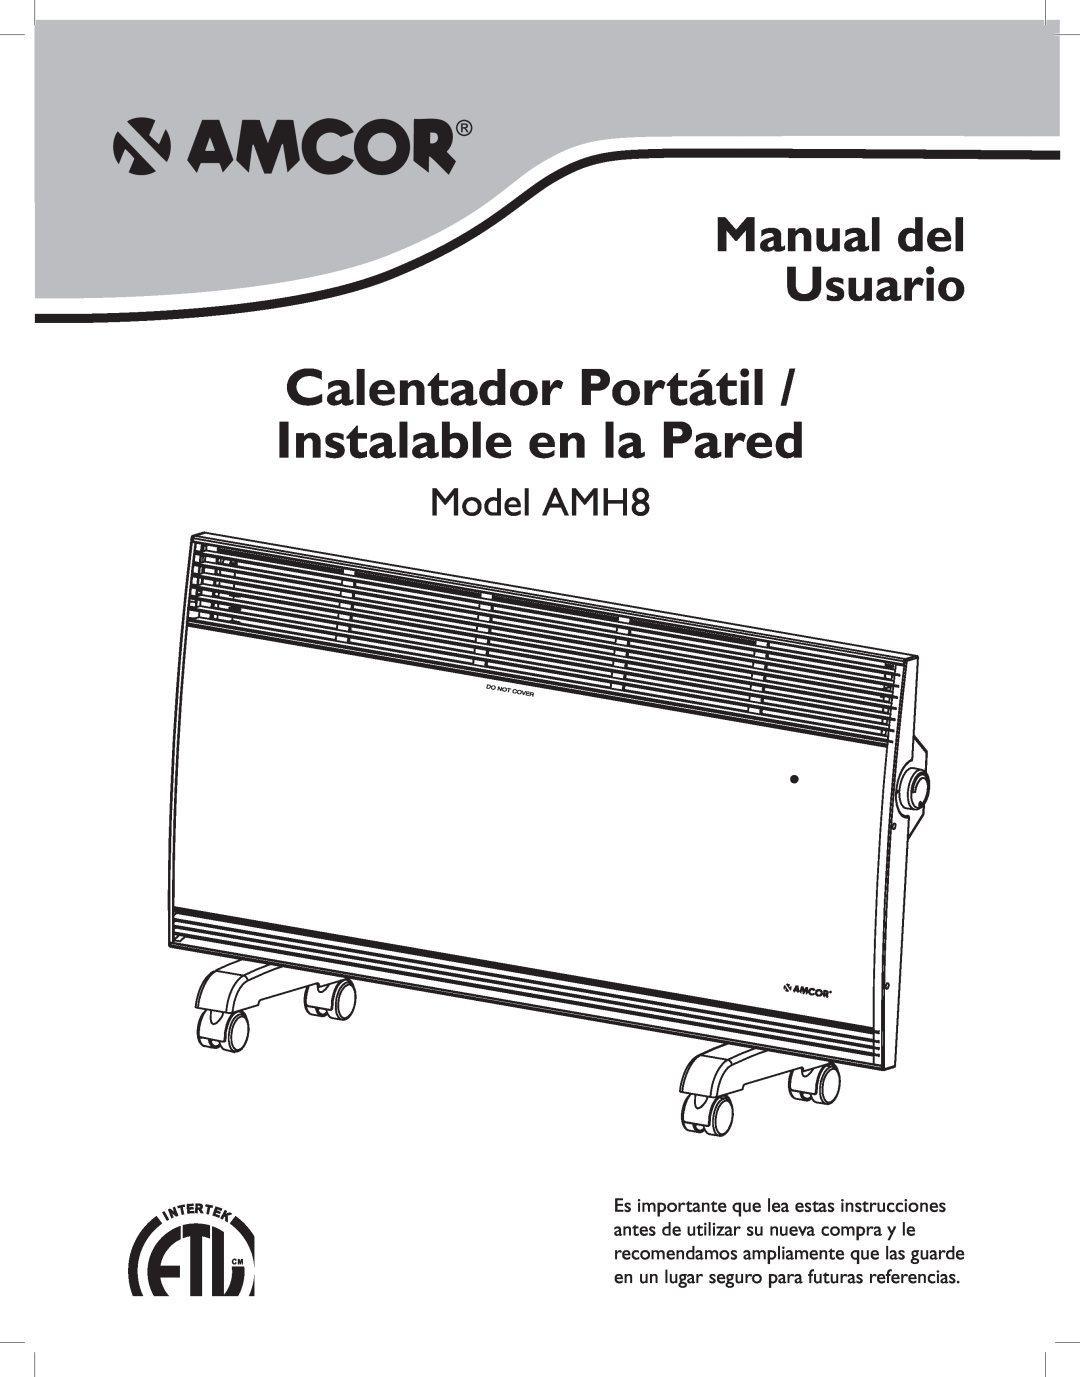 Amcor owner manual Manual del Usuario, Model AMH8, Calentador Portátil / Instalable en la Pared 